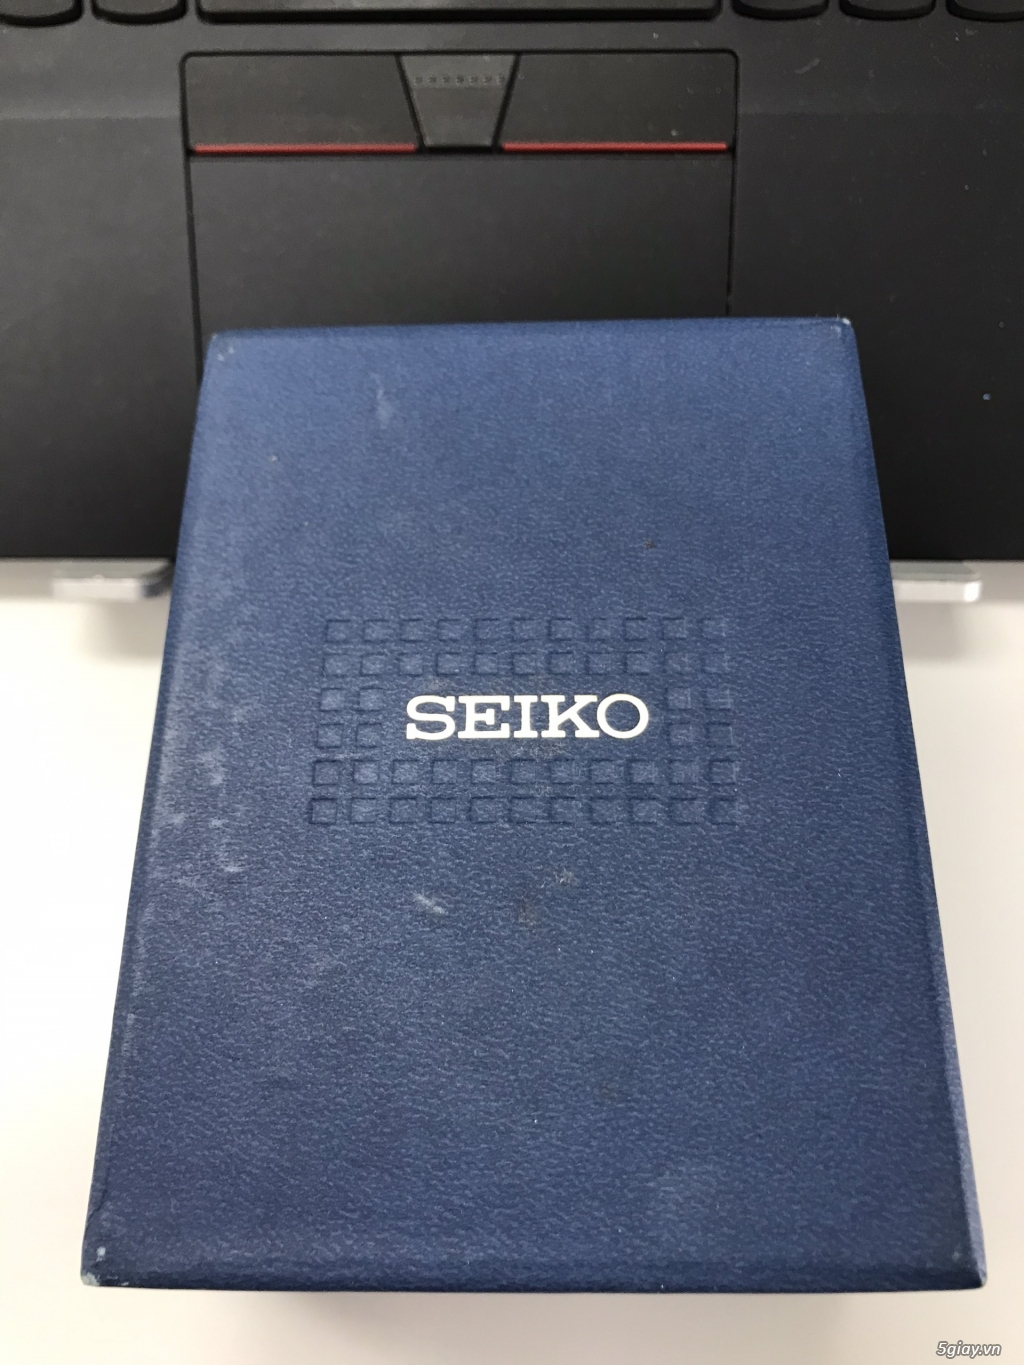 Đồng hồ Seiko Le Grand chính hãng nguyên hộp nguyên tem mới 100% - 8